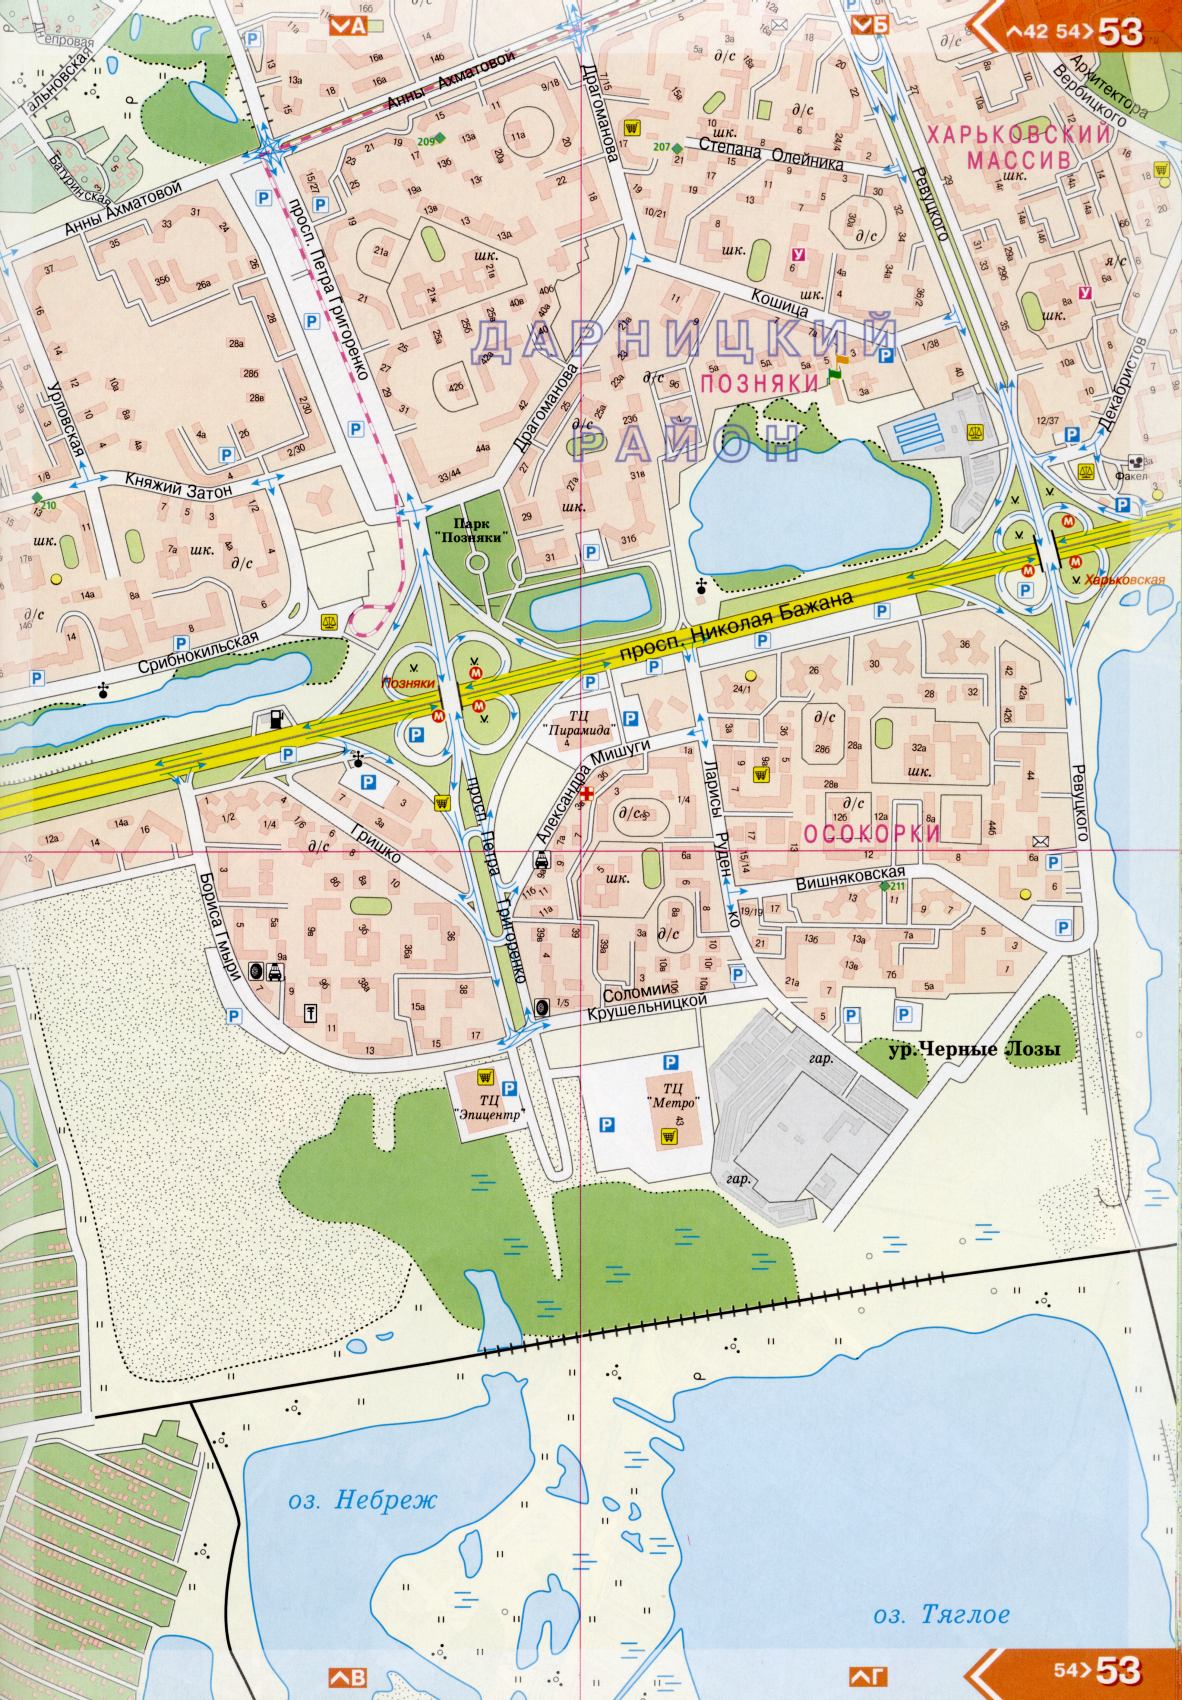 Kiev carte détails 1cm = 150m pour 45 feuilles. Carte de Kiev de l'atlas des routes. Télécharger une carte détaillée, I4